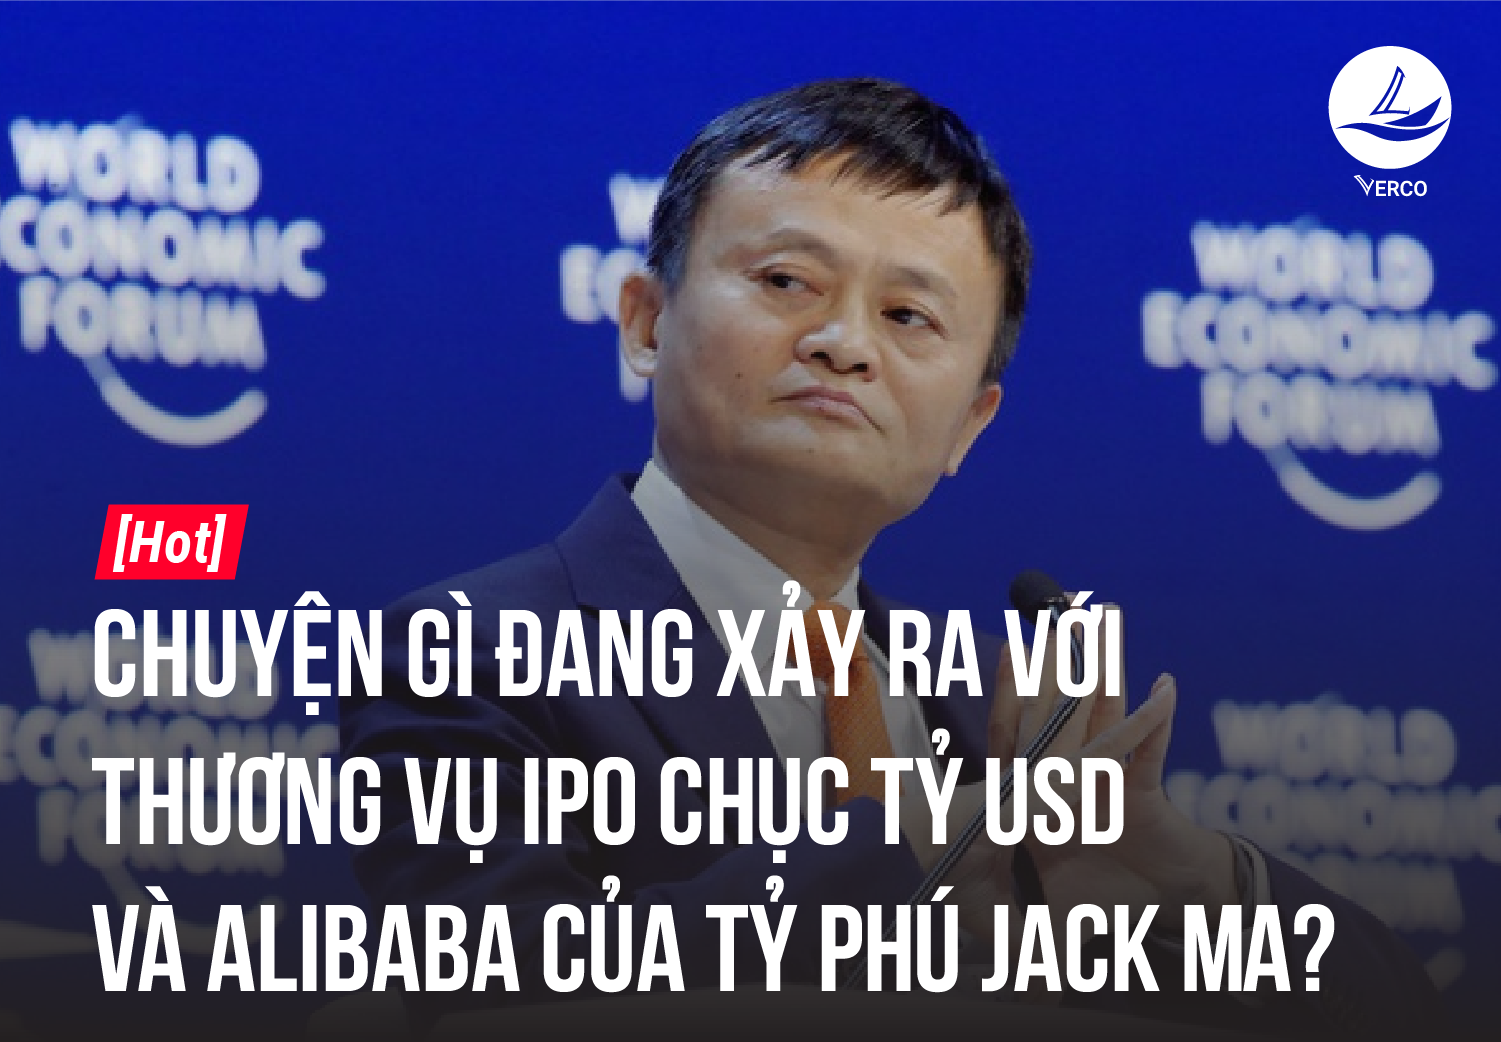 [HOT] Chuyện gì đang xảy ra với thương vụ IPO chục tỷ USD và Alibaba của Tỷ phú Jack Ma?